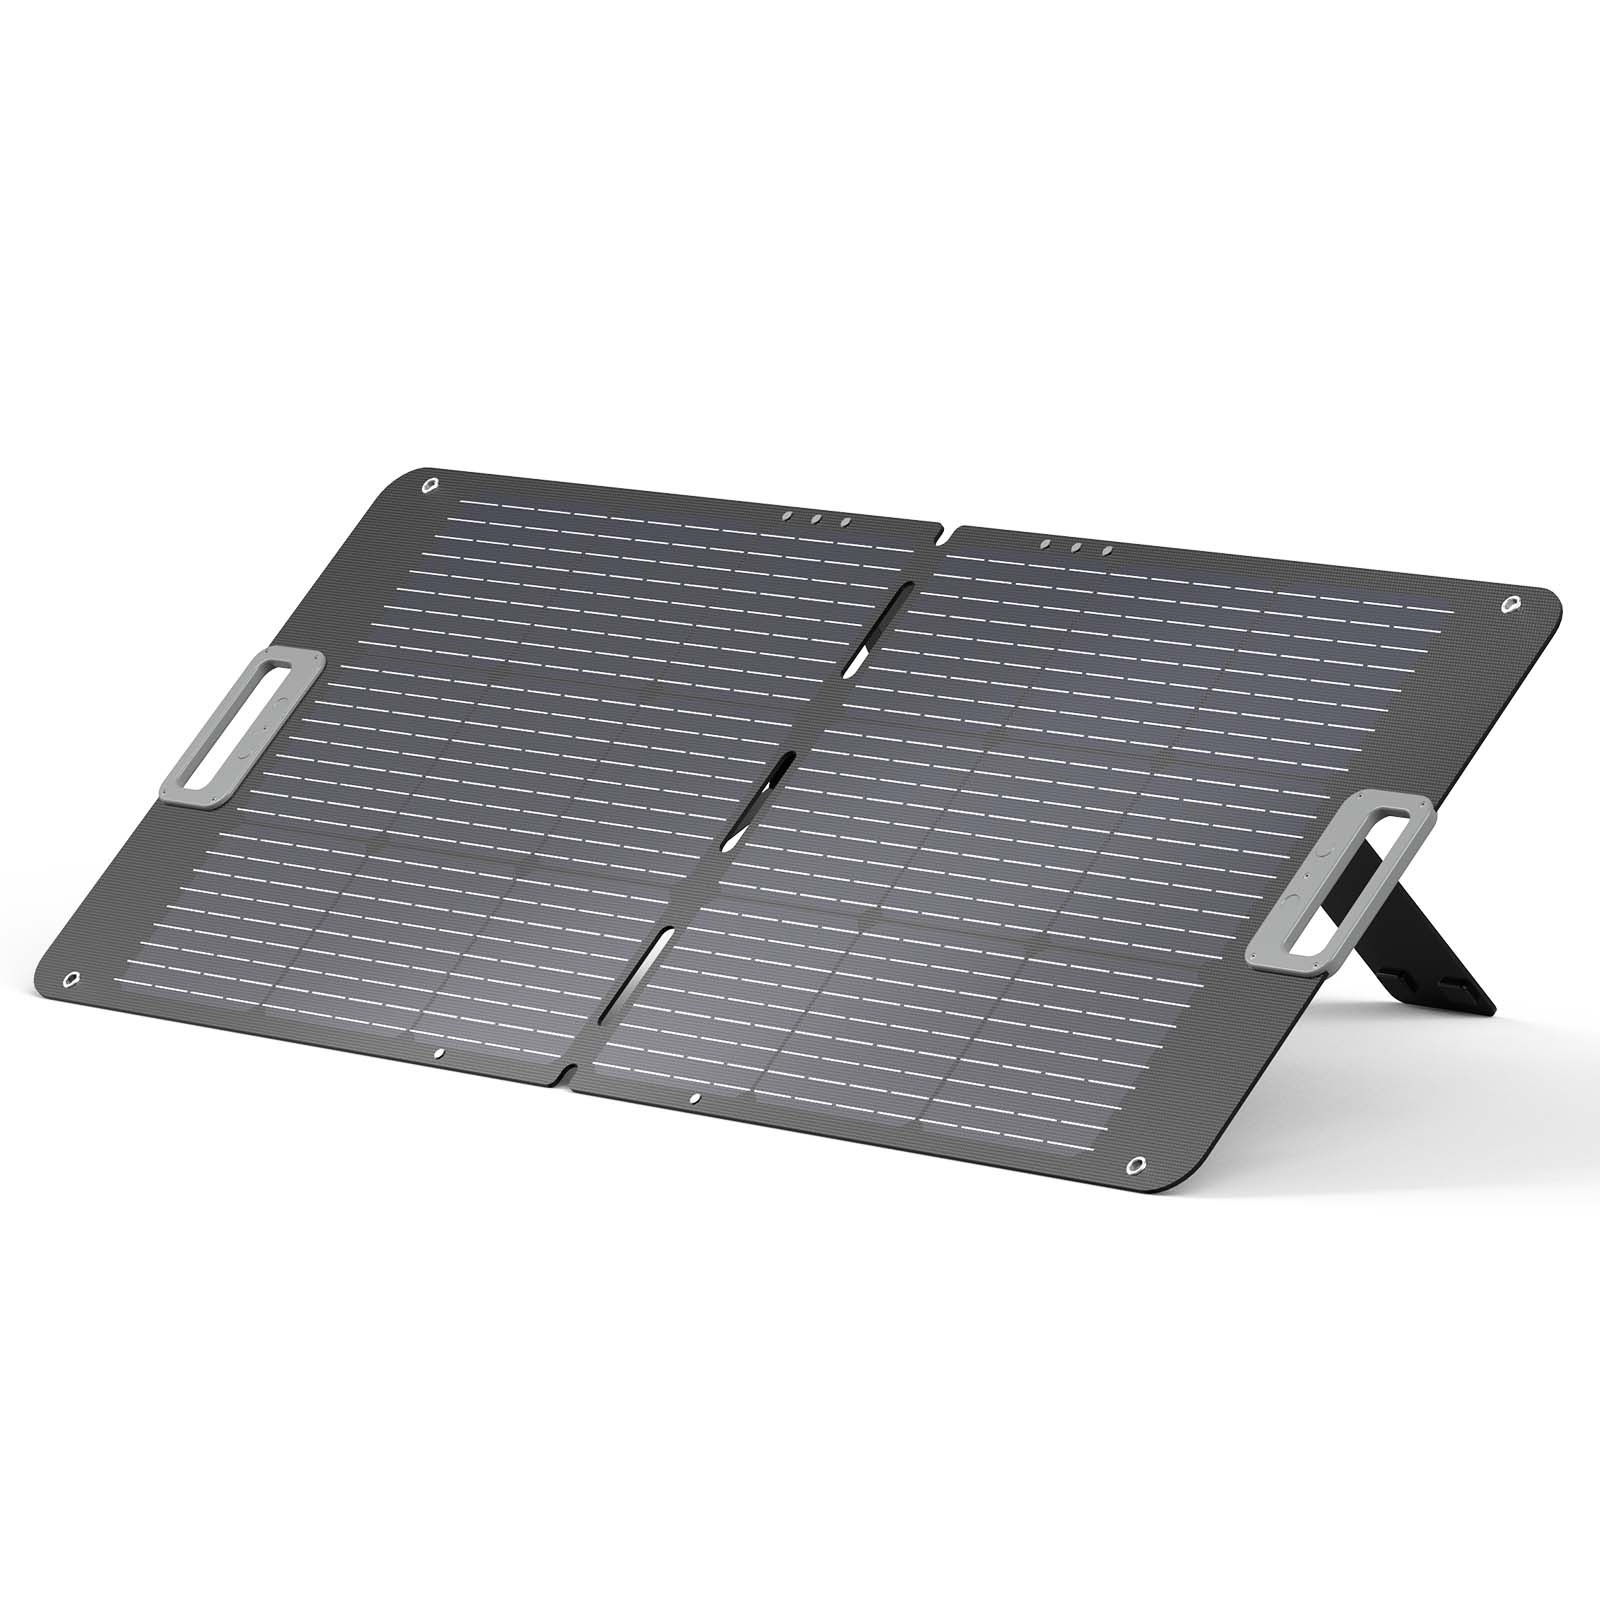 ソーラーパネル 100W 折りたたみ式 太陽光 アウトドア ポータブル電源